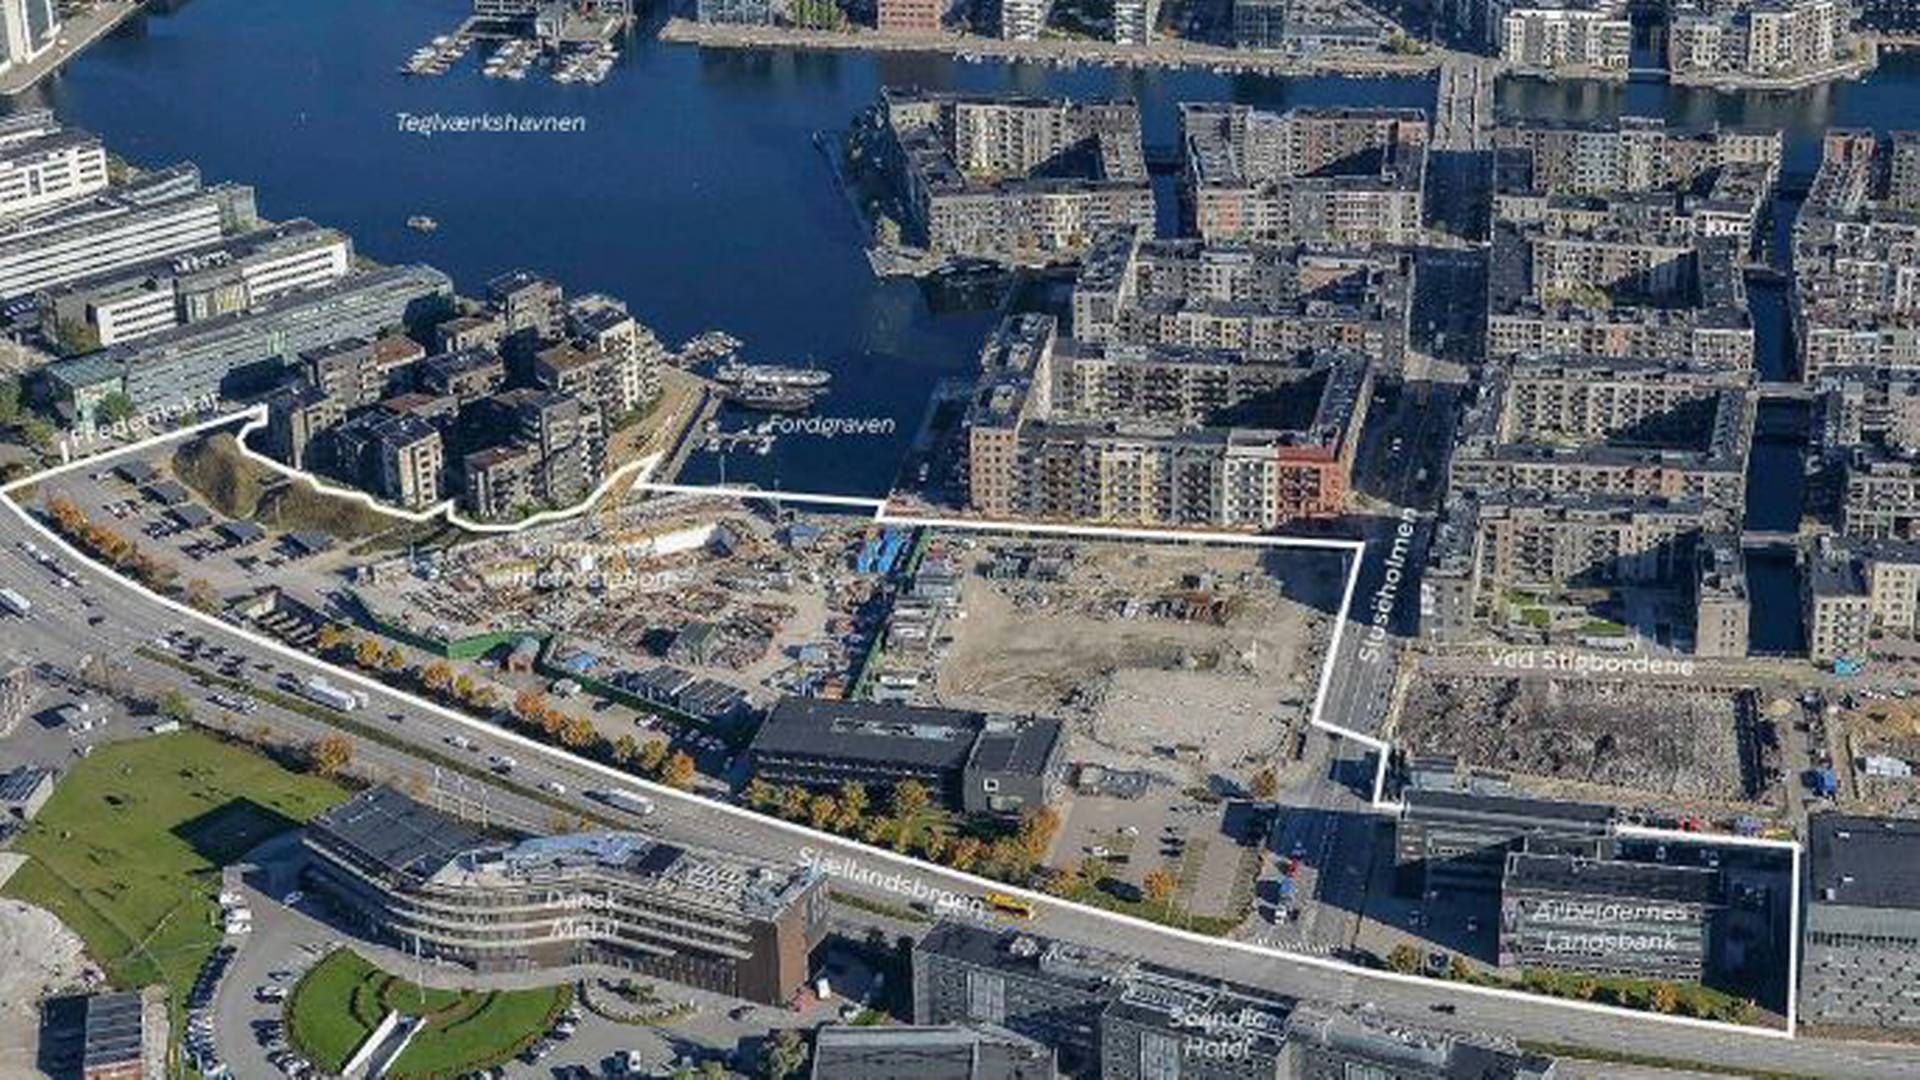 Det 47.000 kvm store område mellem Sjællandsbroen og Fordgraven ses her optegnet med hvidt. | Foto: Københavns Kommune